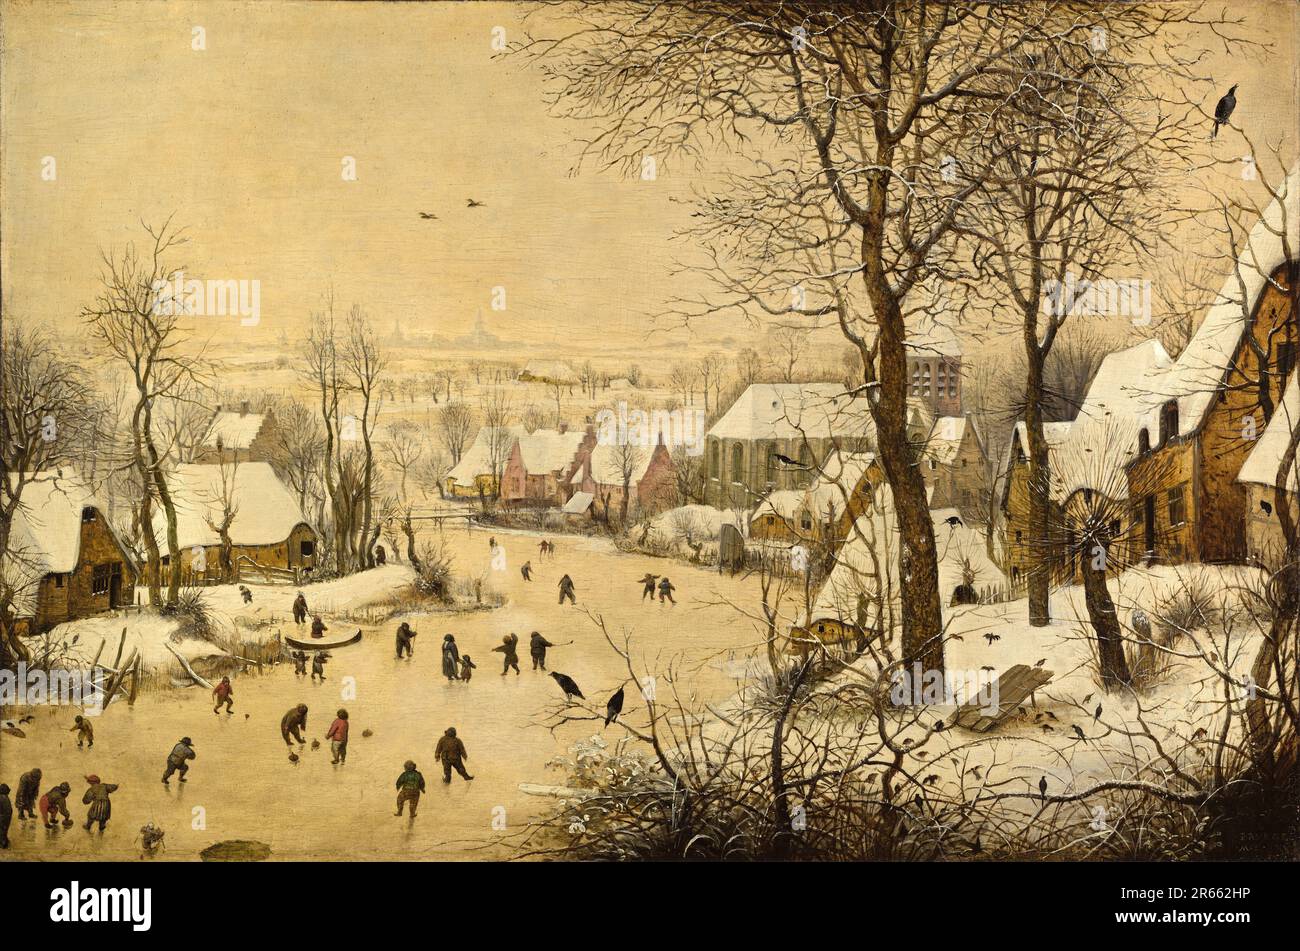 Paysage d'hiver avec patineurs et piège à oiseaux peint par le peintre hollandais de la Renaissance Pieter Breughel l'ancien en 1565. Breughel était le peintre le plus important de la Renaissance hollandaise et flamande. Son choix de sujets a été influent, il a rejeté les portraits et les scènes religieuses en faveur des scènes locales et paysannes. Banque D'Images